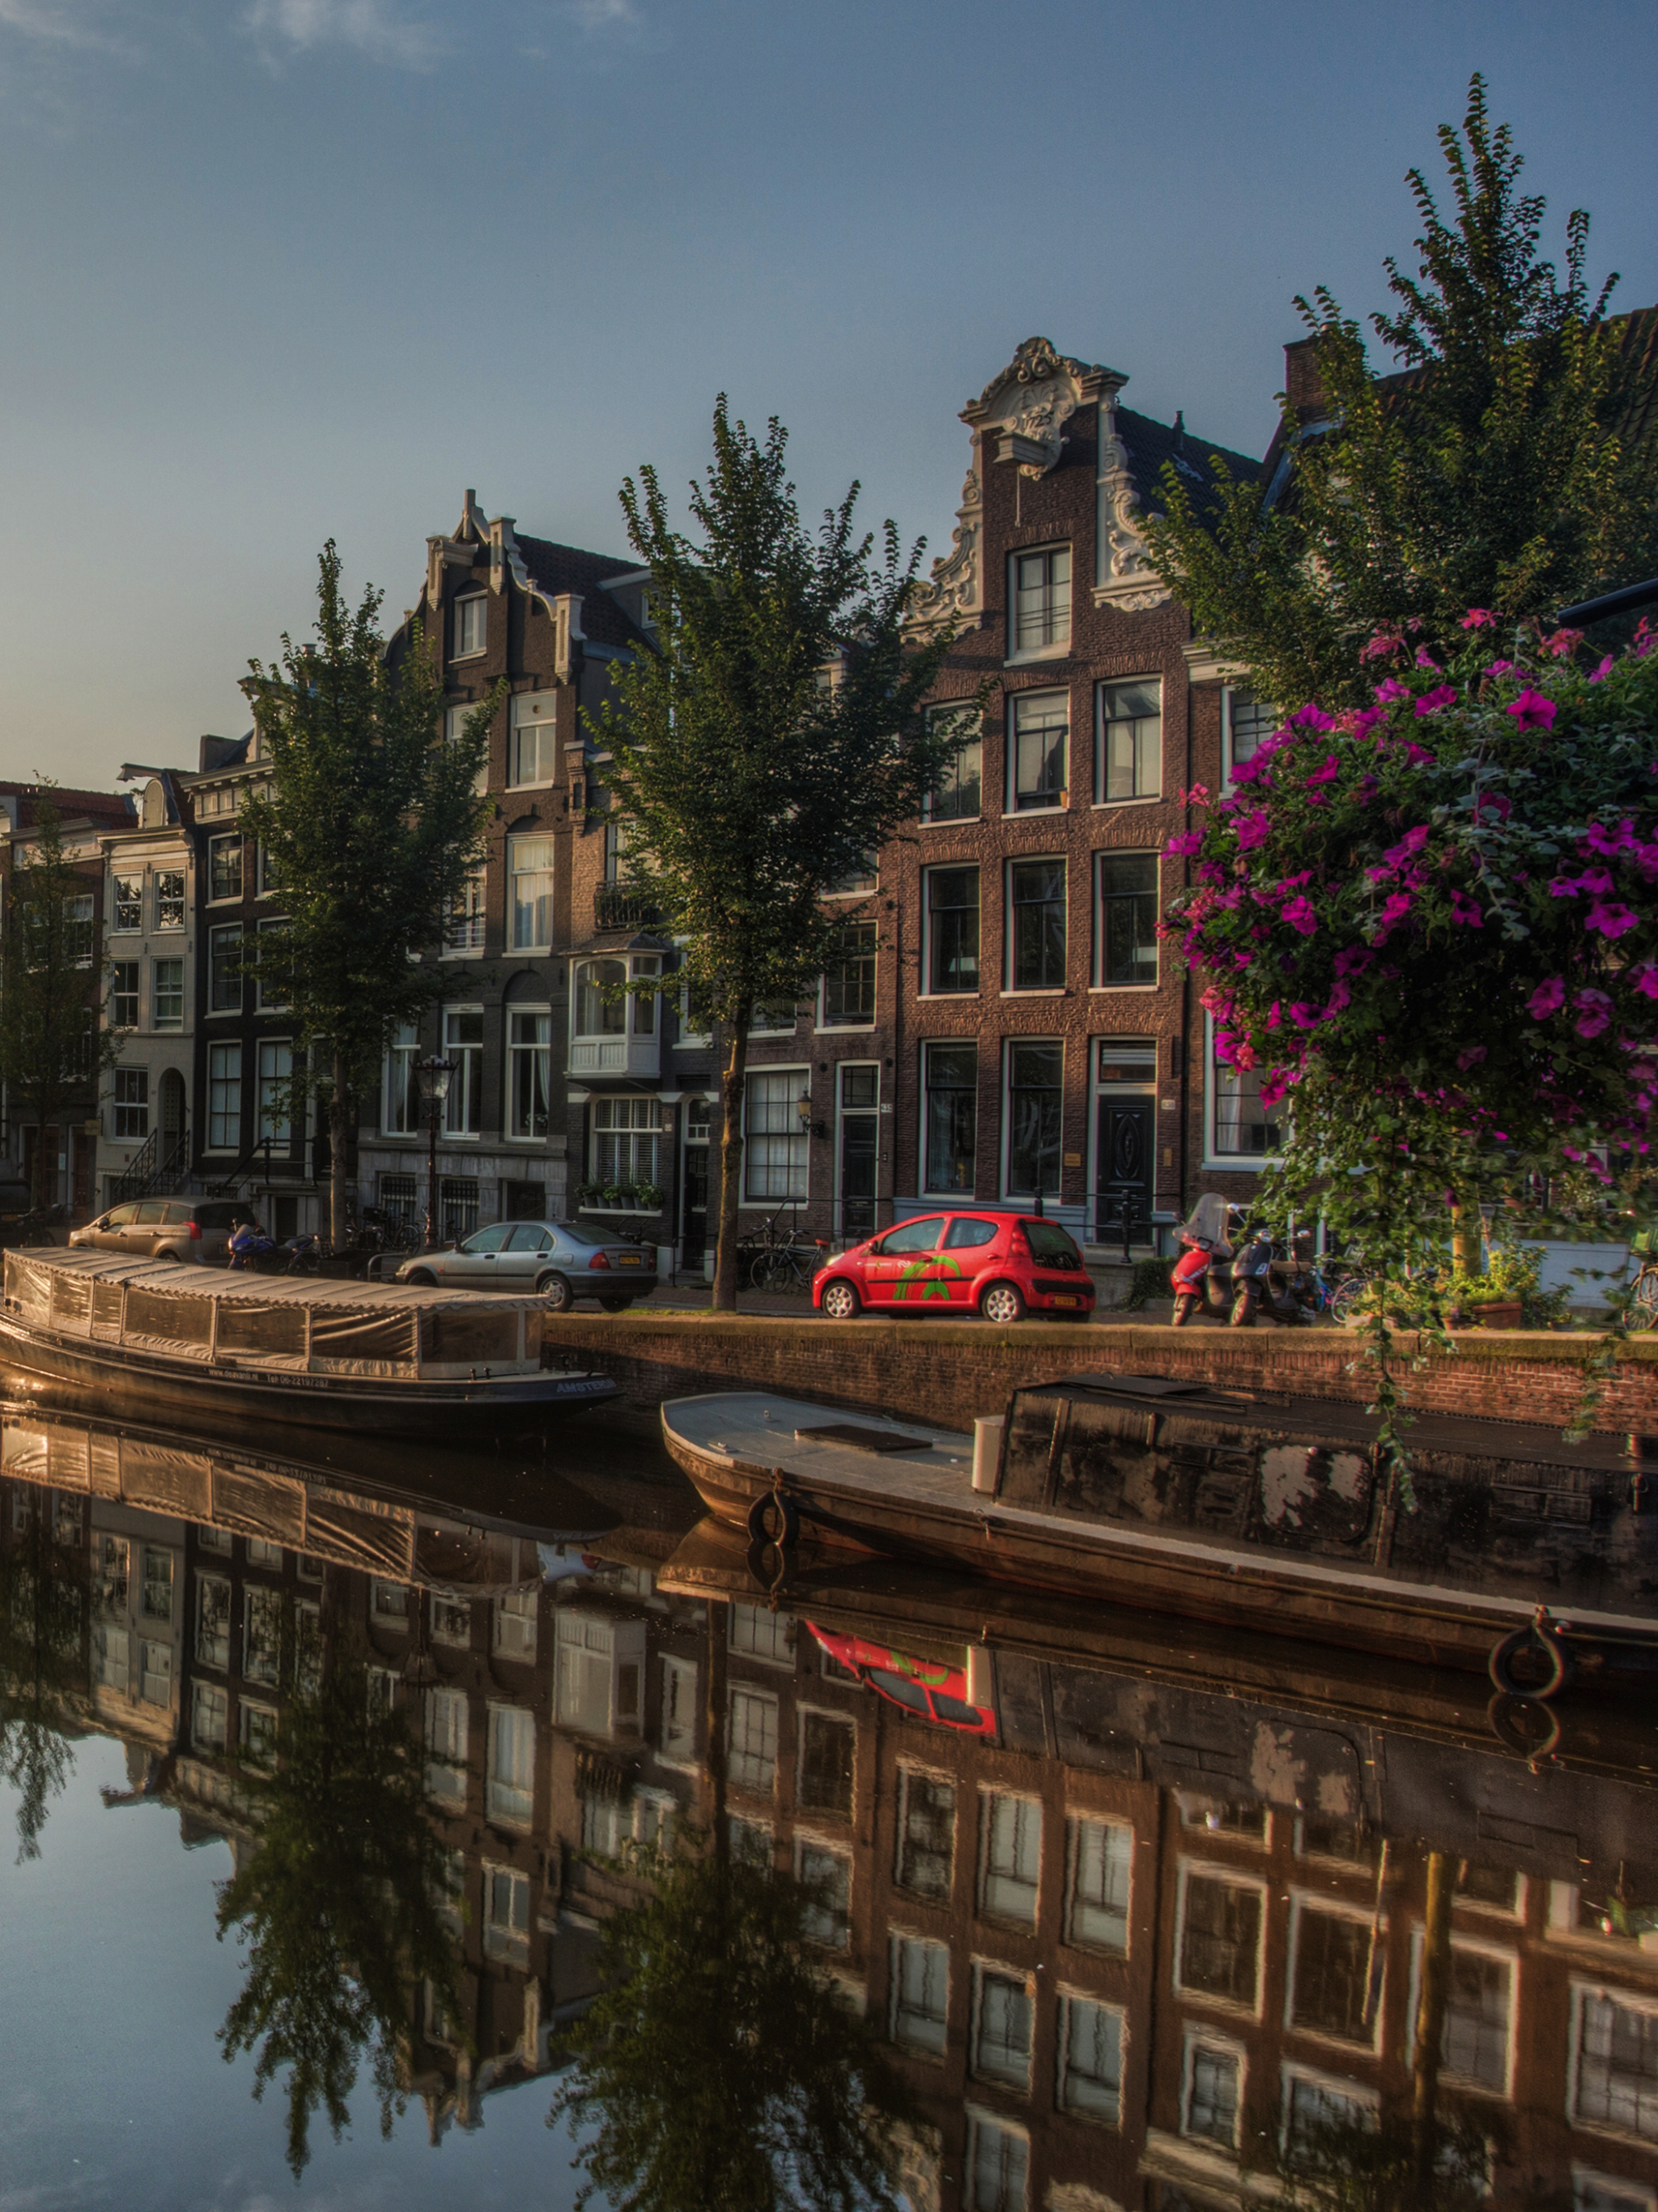 Скачать обои бесплатно Города, Отражение, Нидерланды, Амстердам, Сделано Человеком картинка на рабочий стол ПК